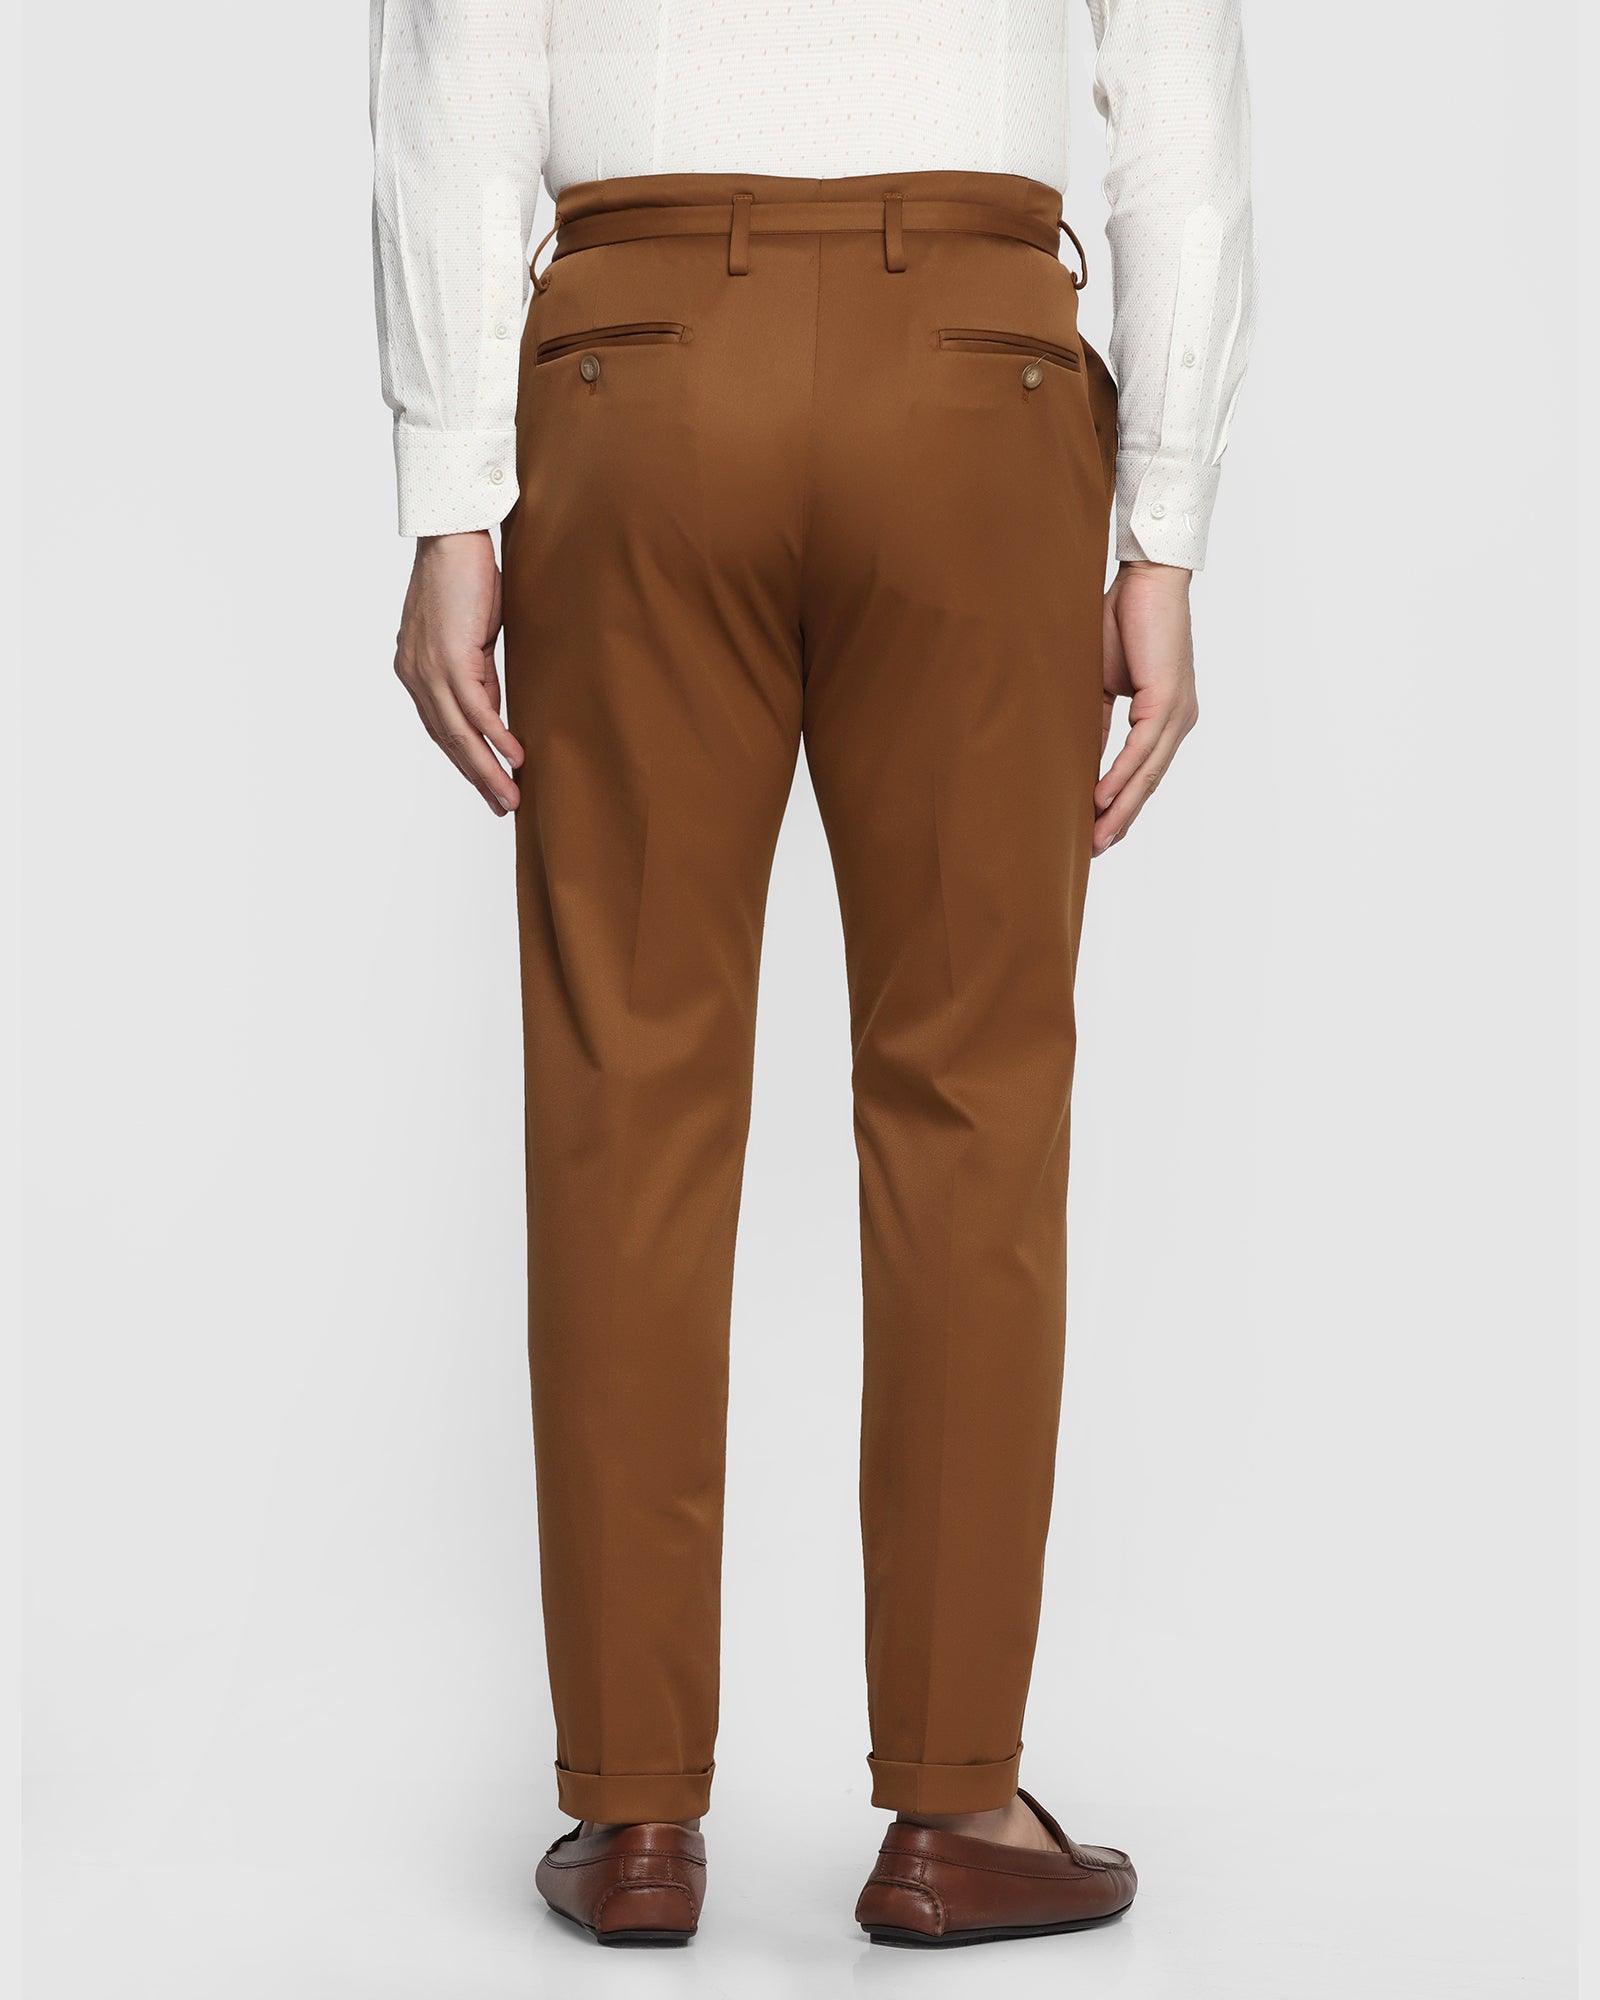 Sibuca Brown Trousers | Miista Europe | Made in Spain